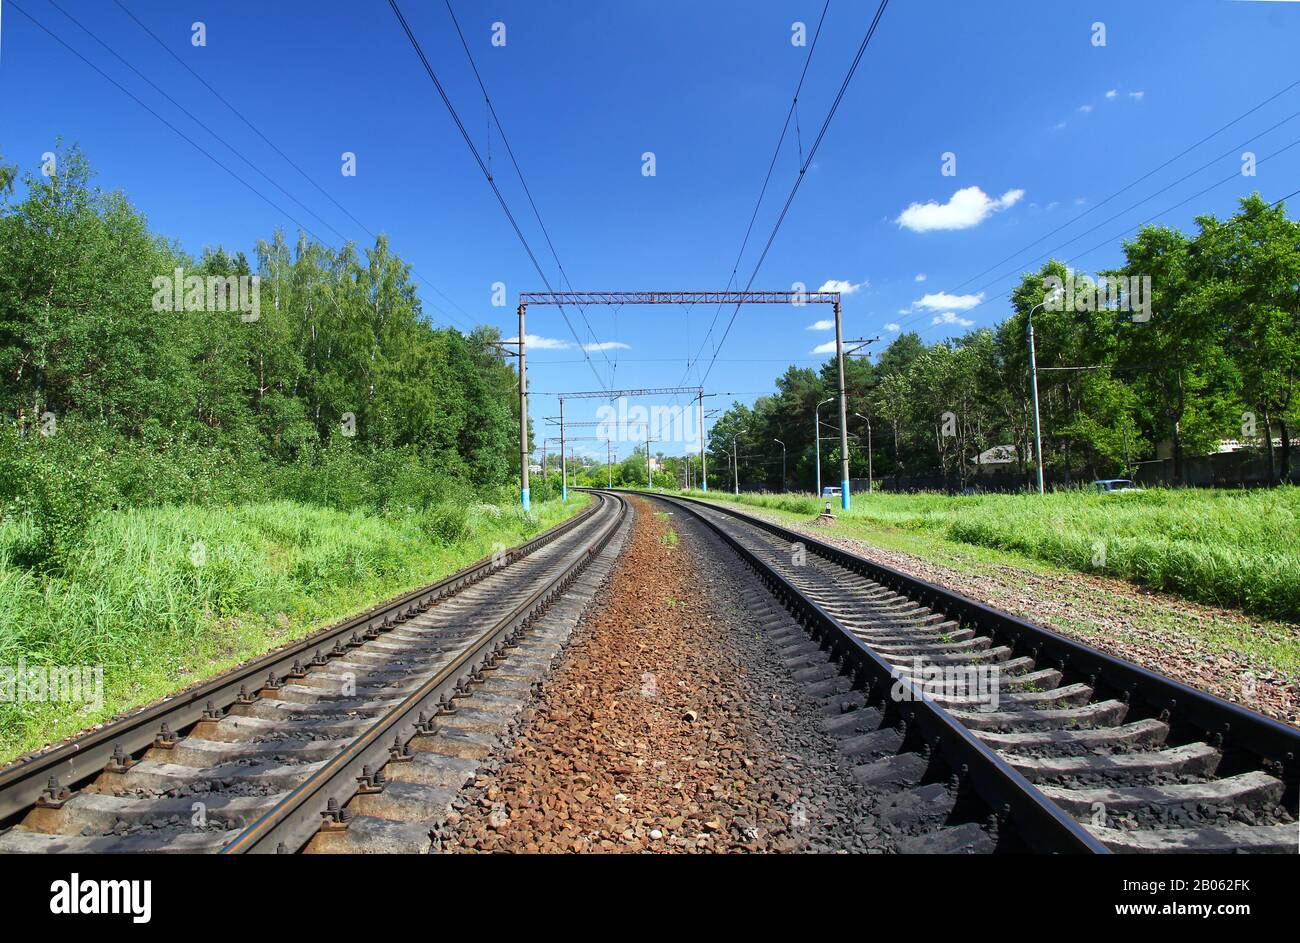 The railway in Kaluga, Russia Stock Photo